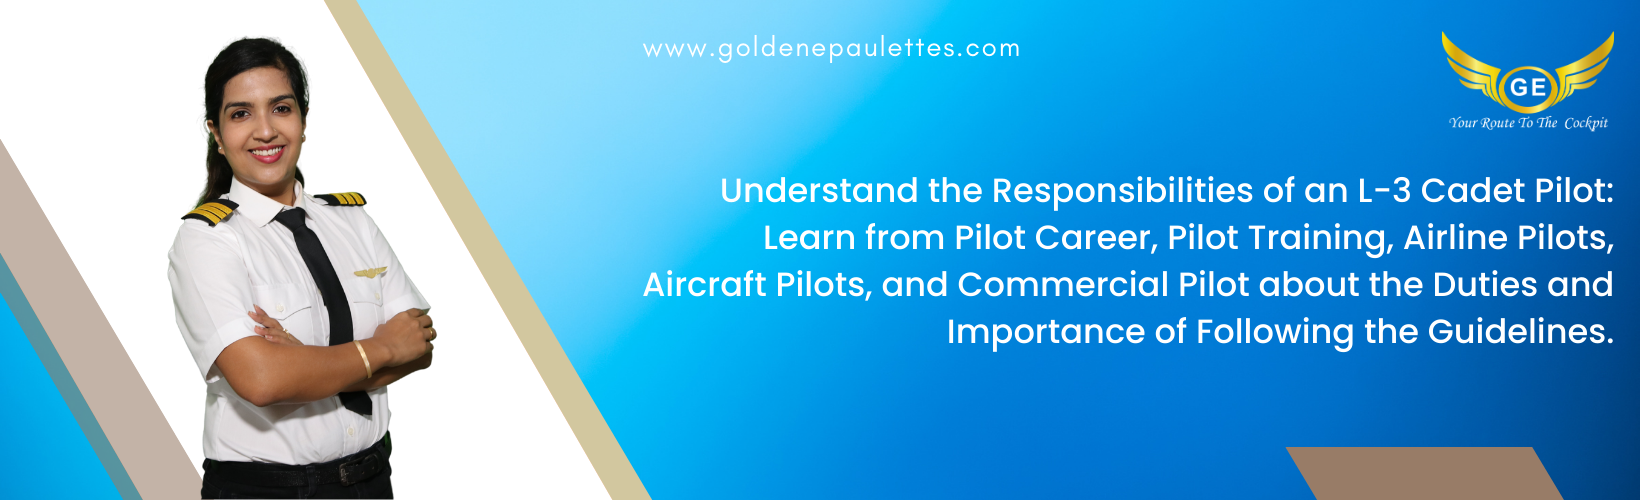 Understanding the Responsibilities of an L-3 Cadet Pilot